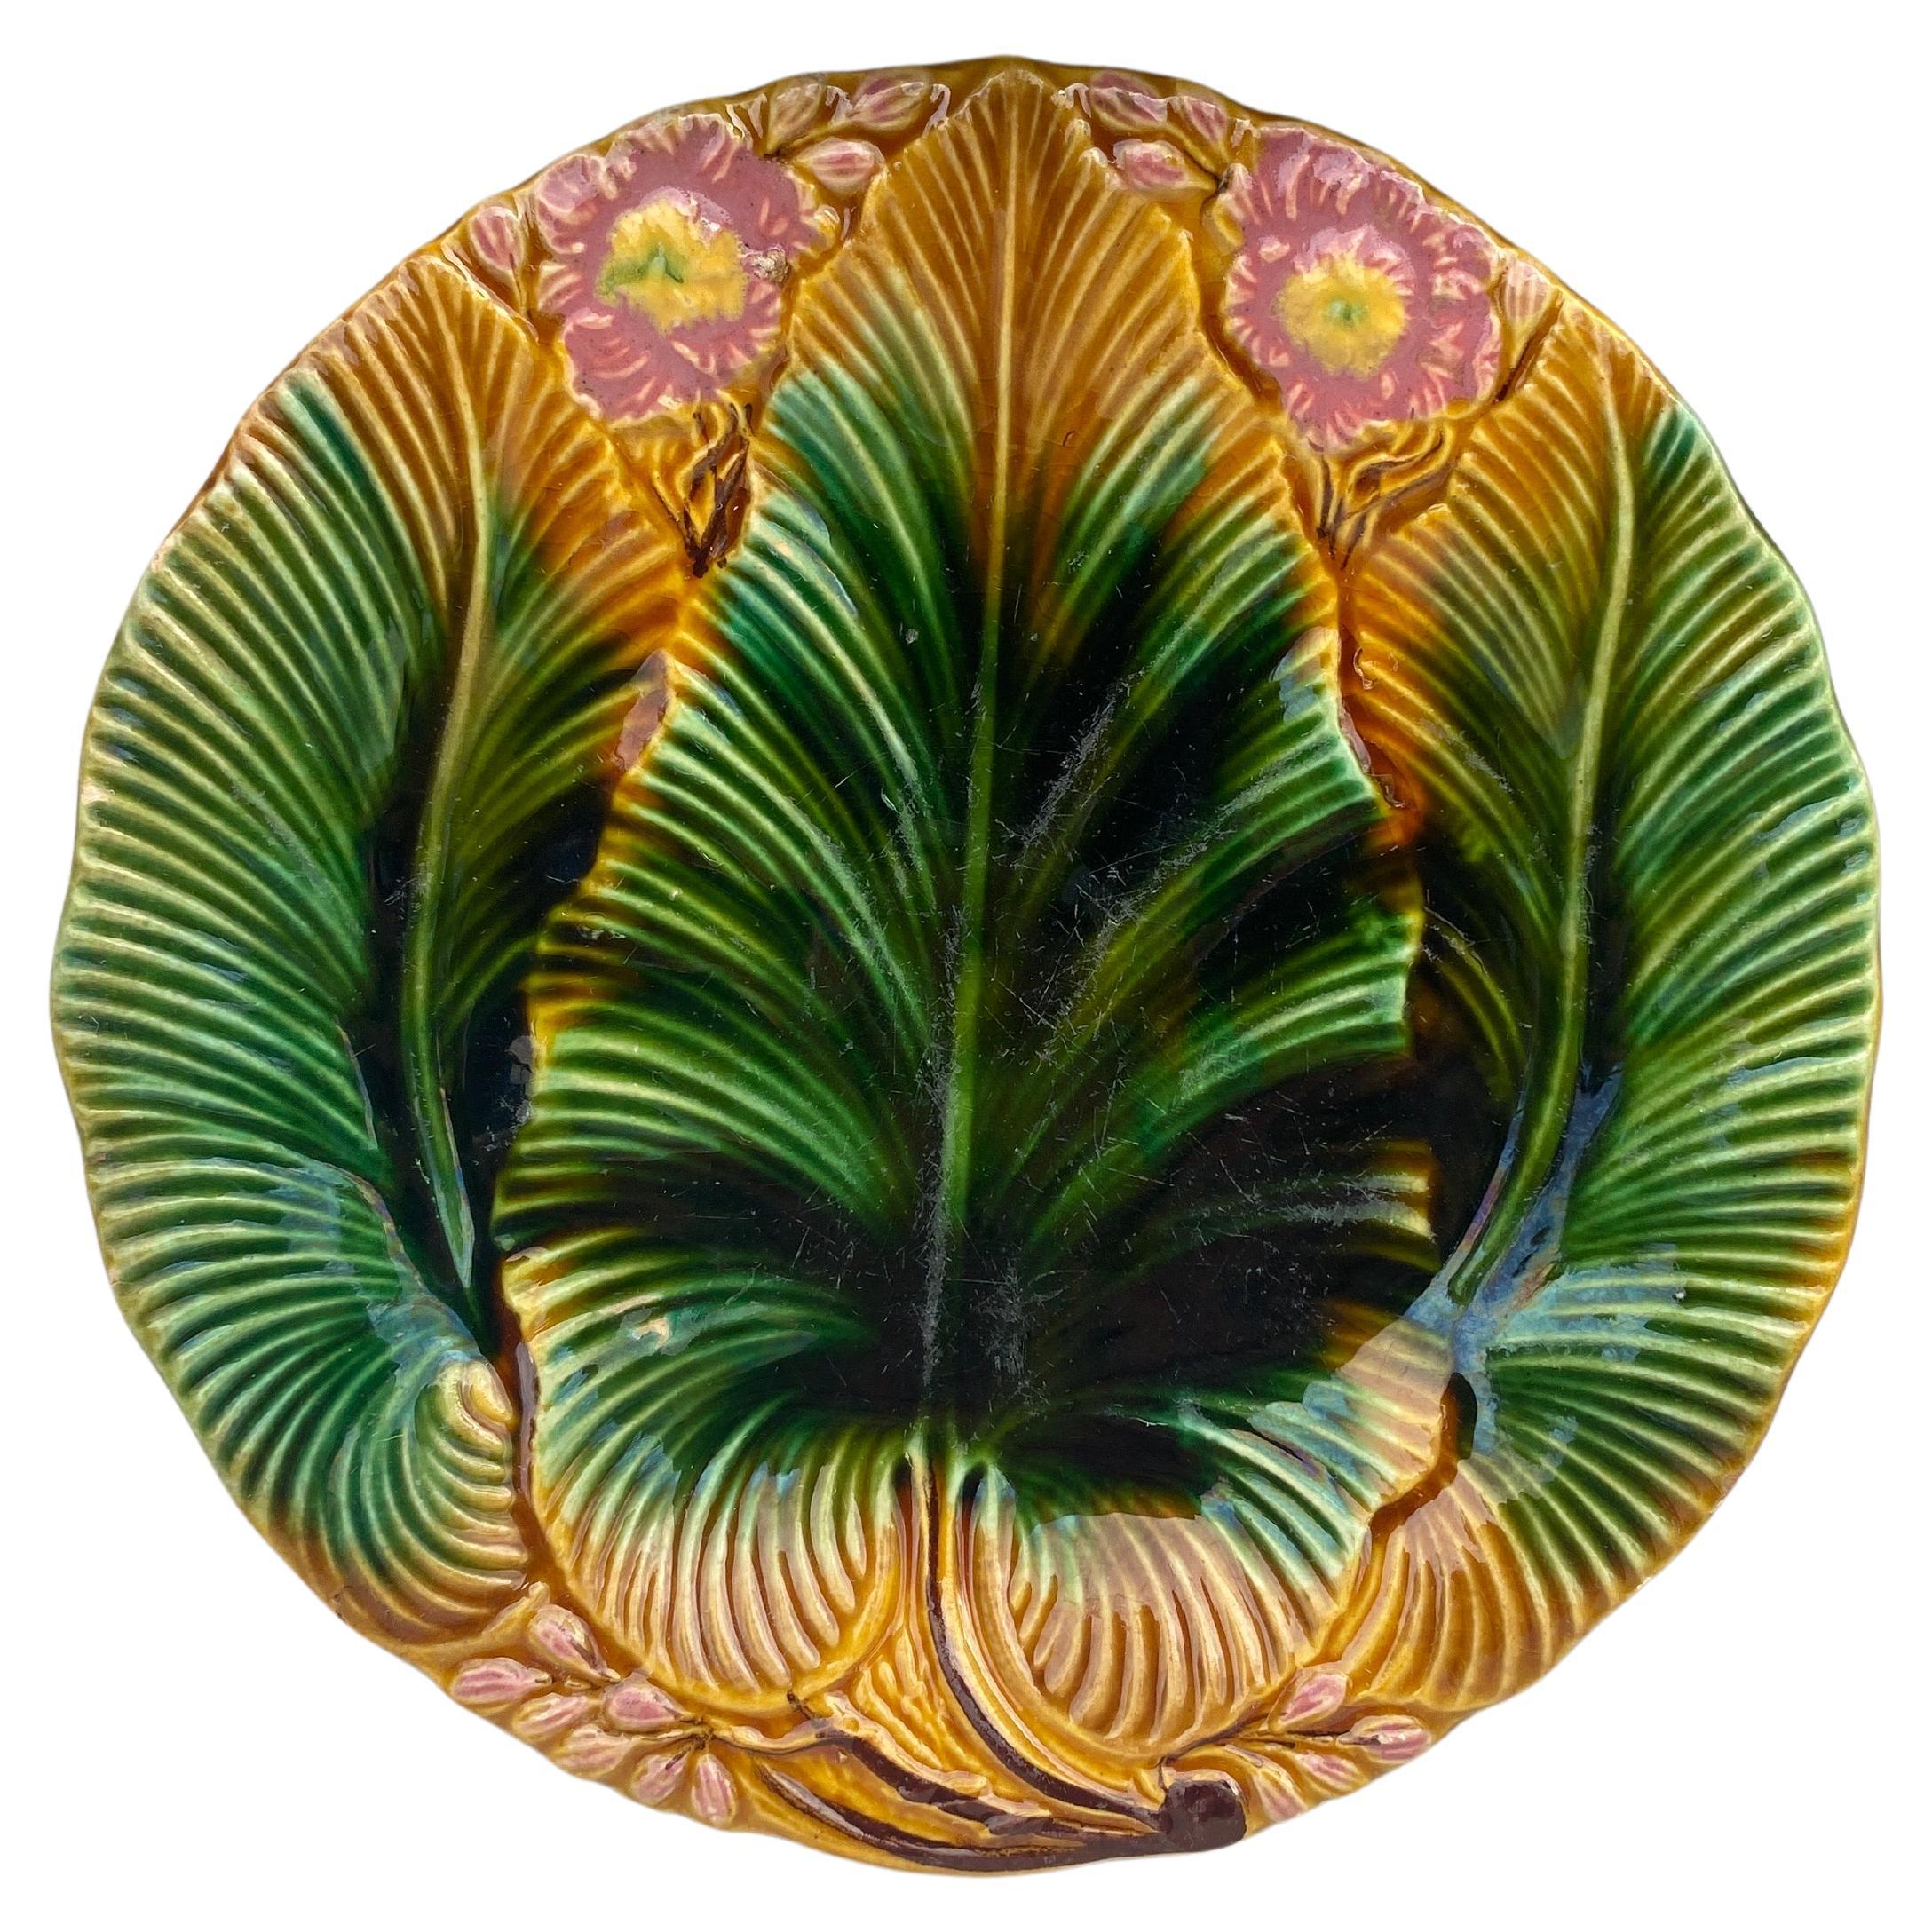 Assiette en majolique à feuilles de palmier Villeroy & Boch, vers 1890